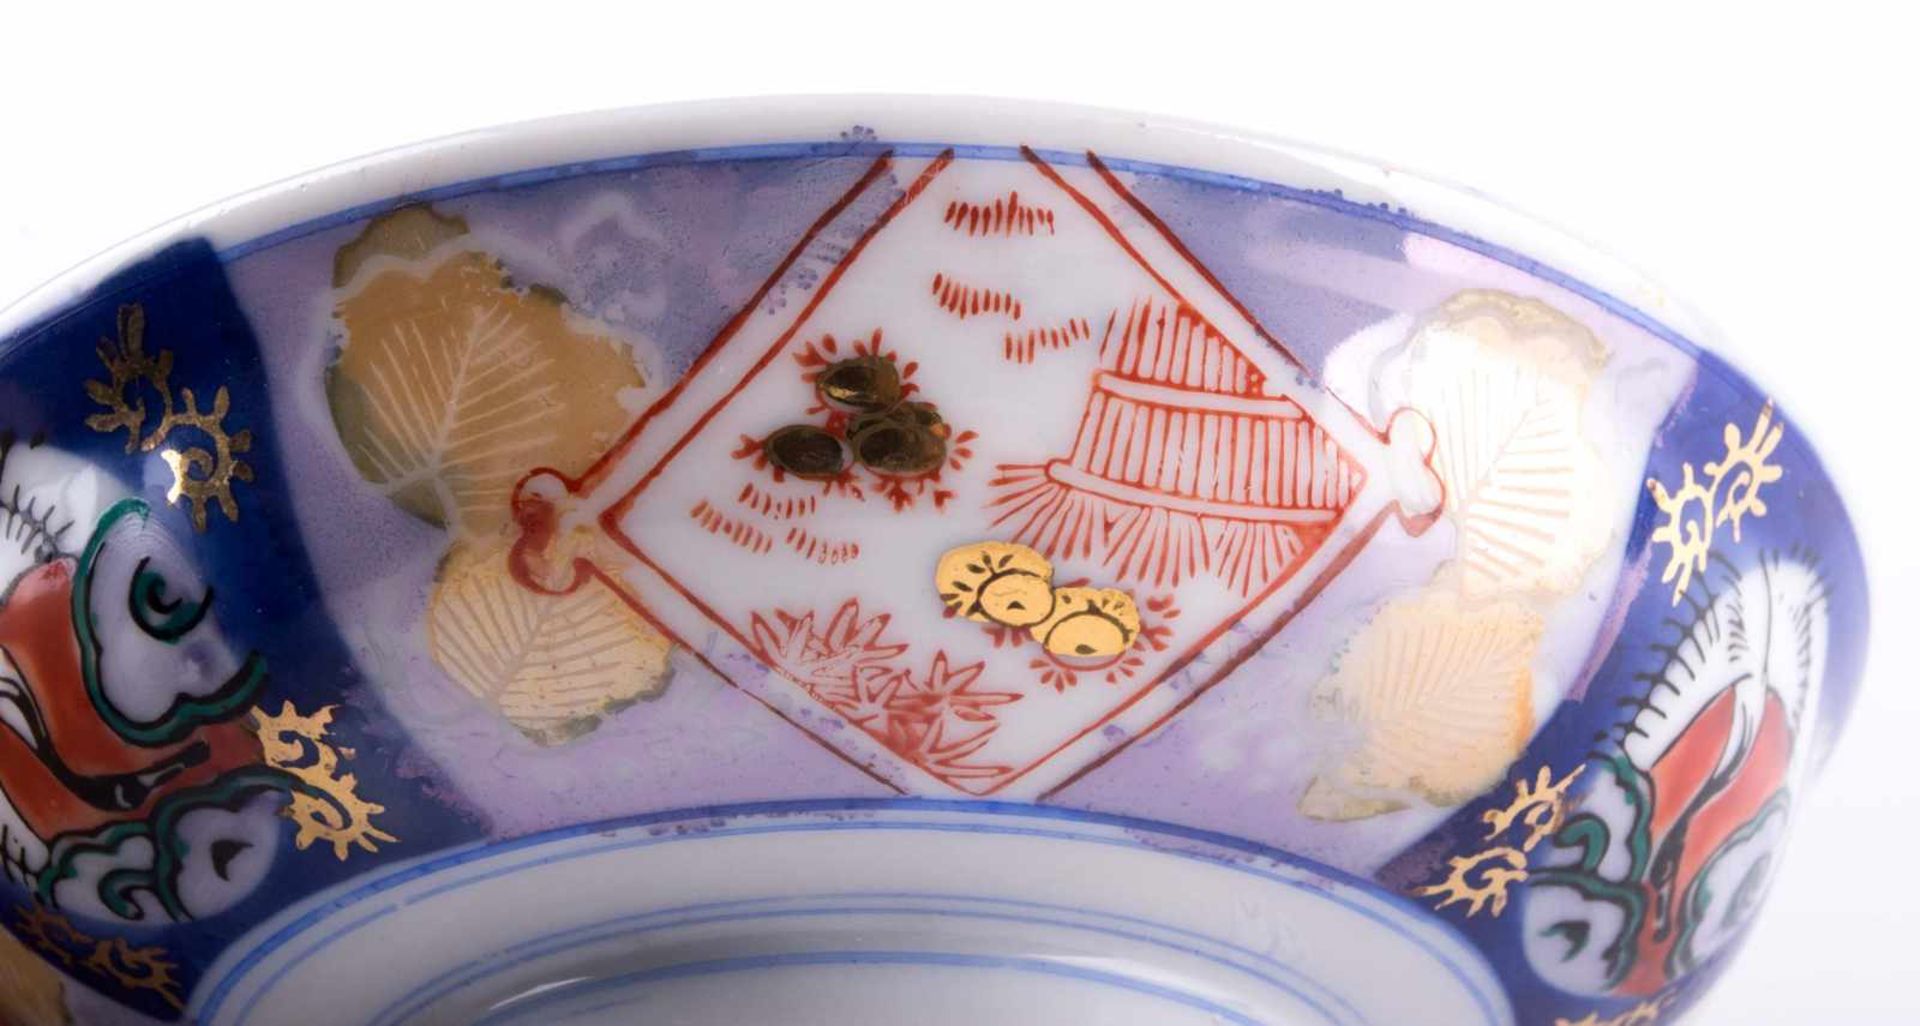 Schale Asien / Bowl, Asia farbig glasiert und Gold staffiert, Ø 14,5 cm, unterm Stand gemarkt - Bild 4 aus 6